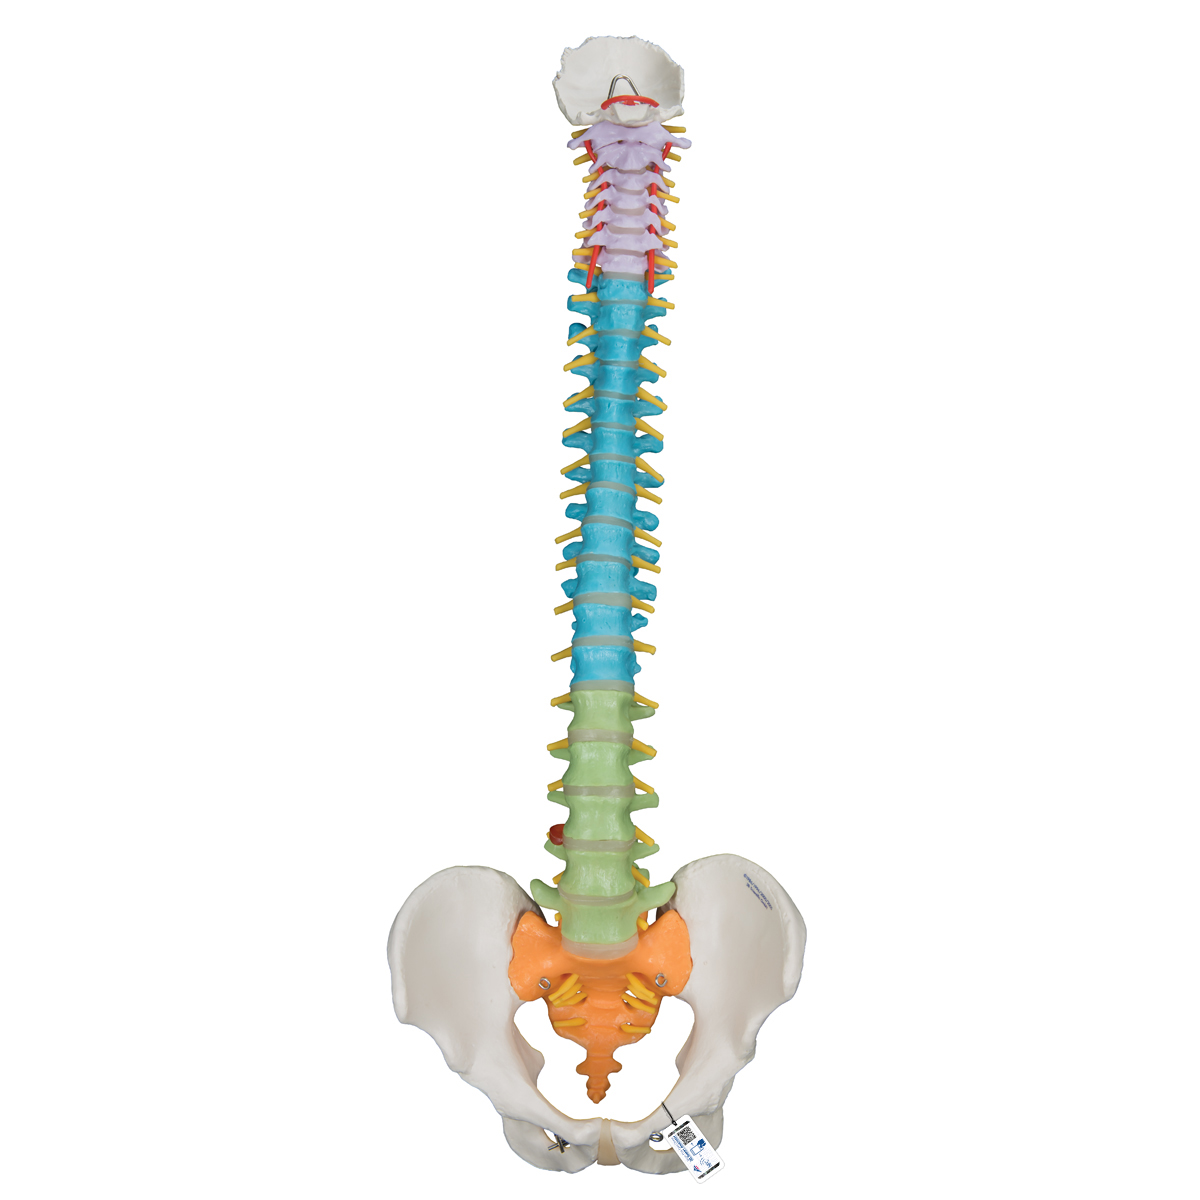 Colonne vertébrale flexible didactique - 3B Smart Anatomy - 1000128 - A58/8  - Colonnes vertébrales (rachis) - 3B Scientific